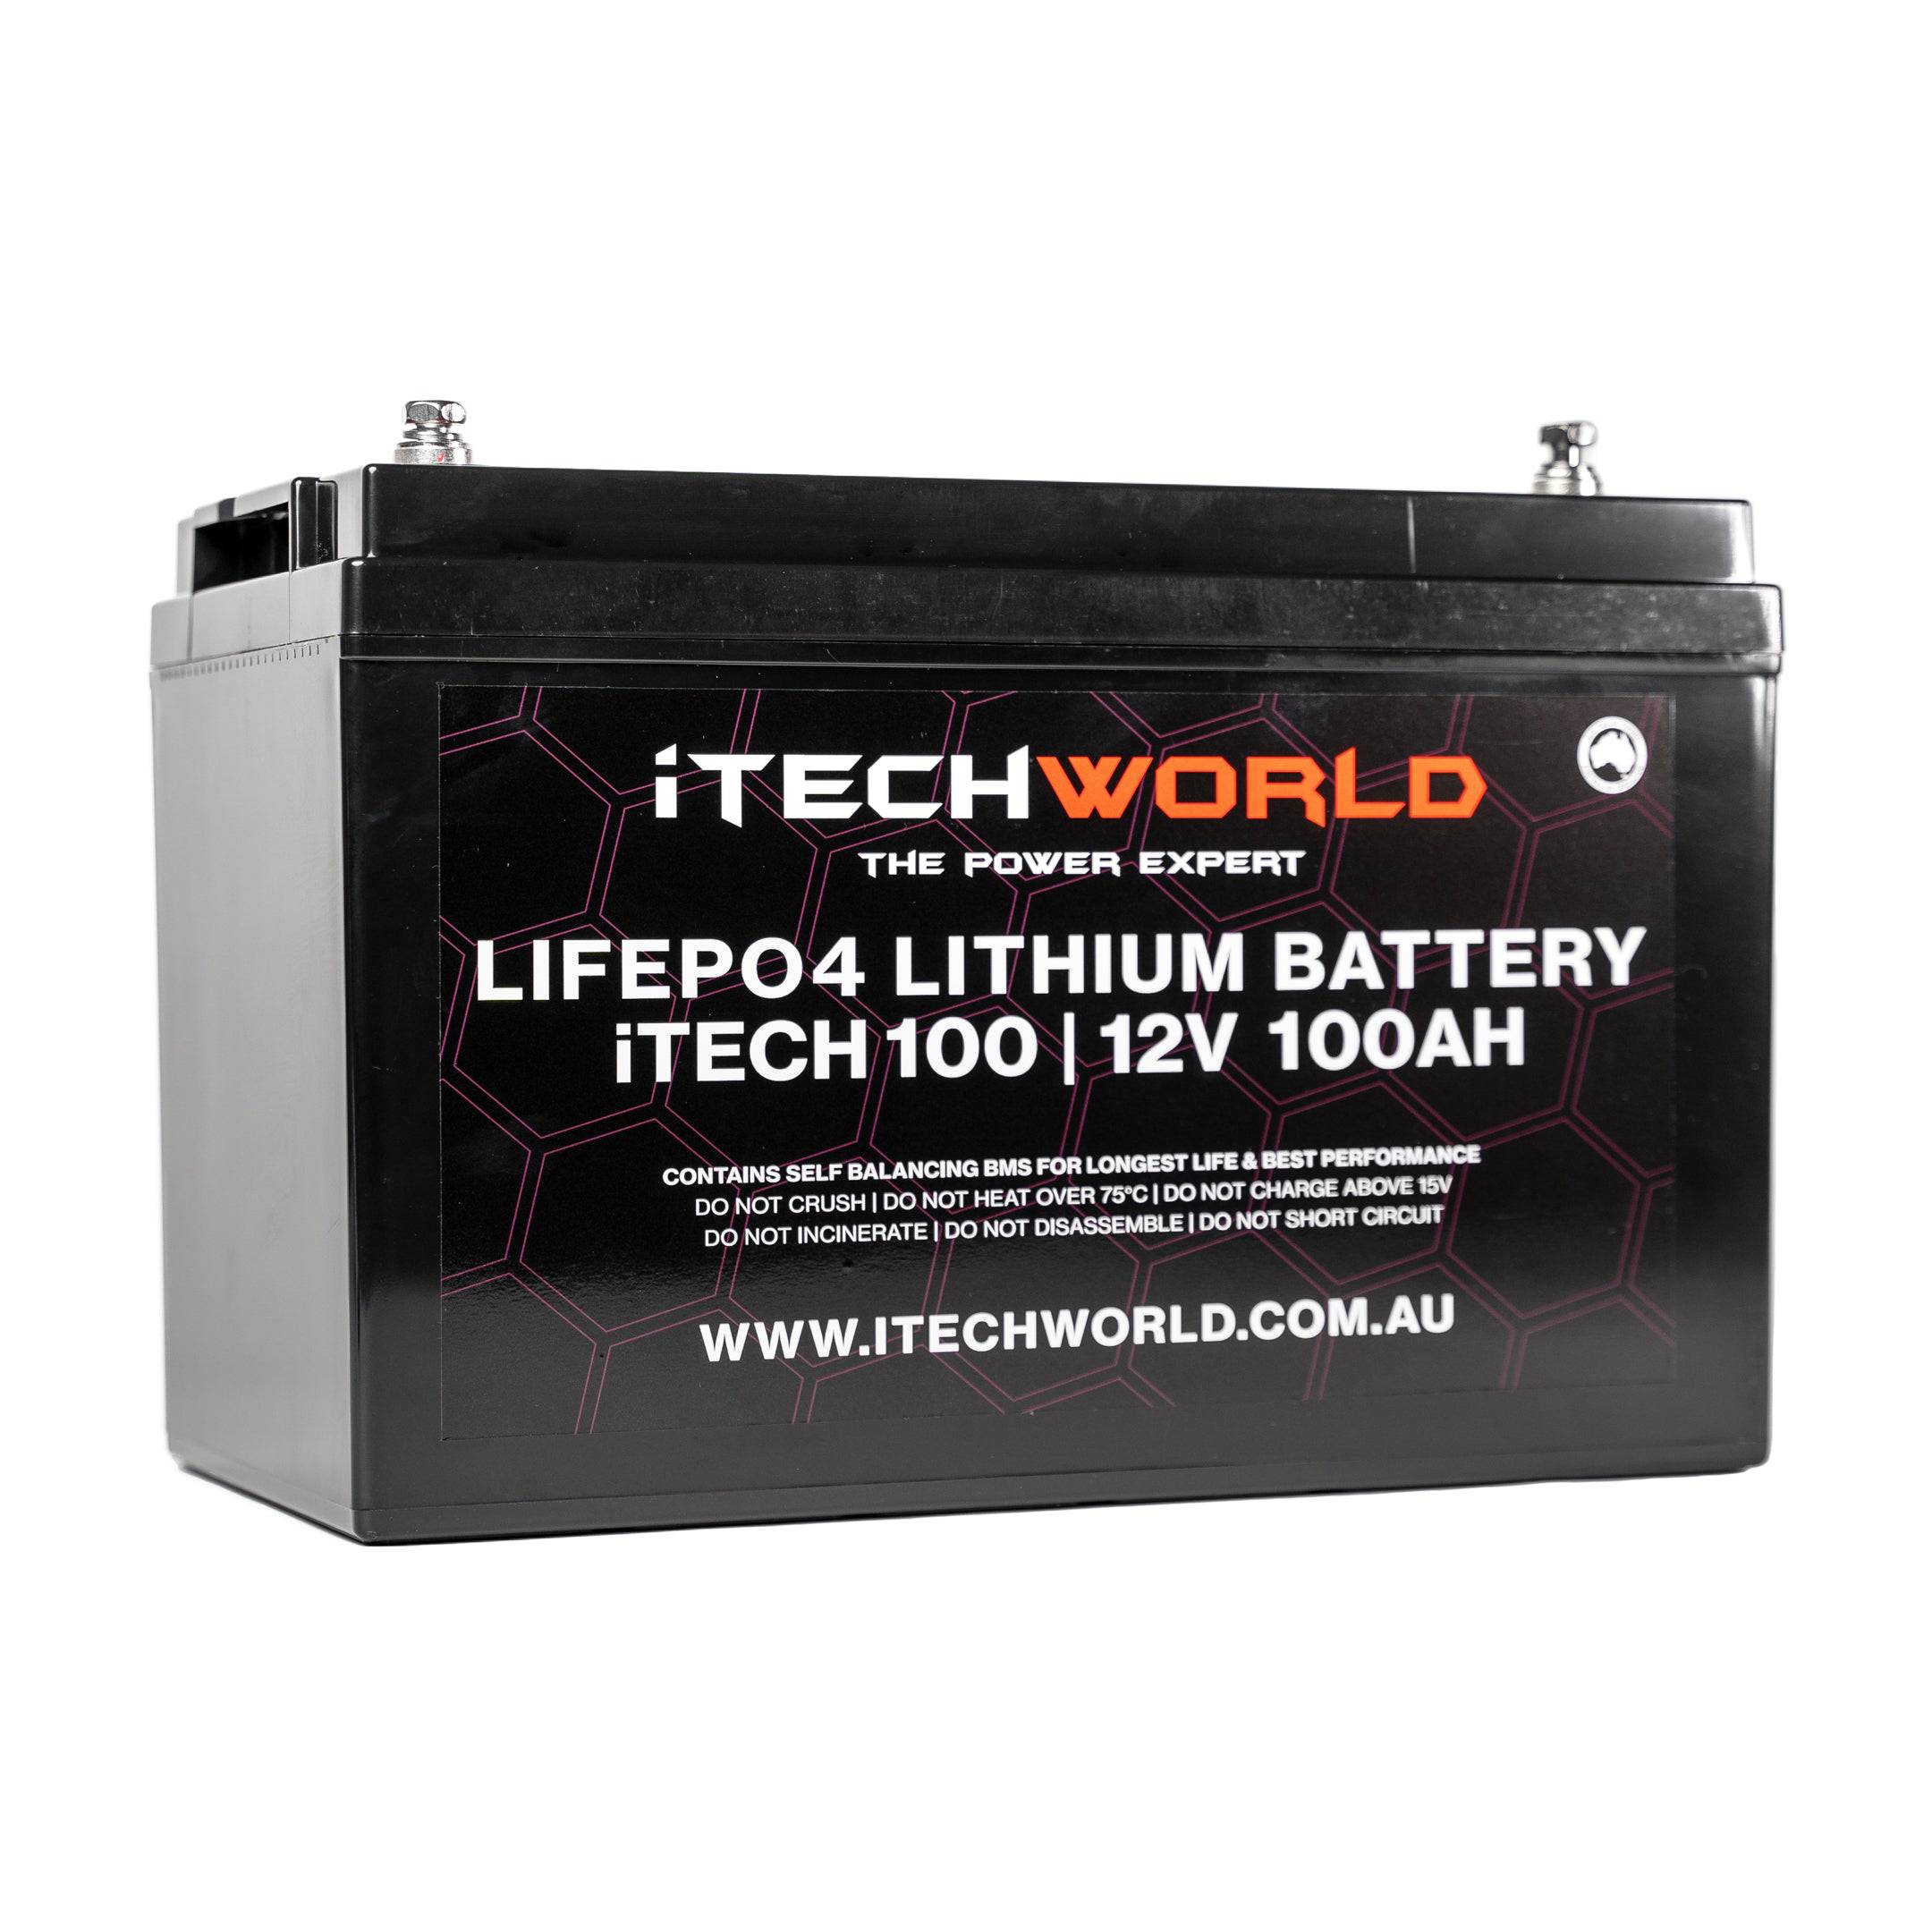 enerdrive 100ah lithium battery, Redarc 100ah lithium battery iTECH100 iTECH120